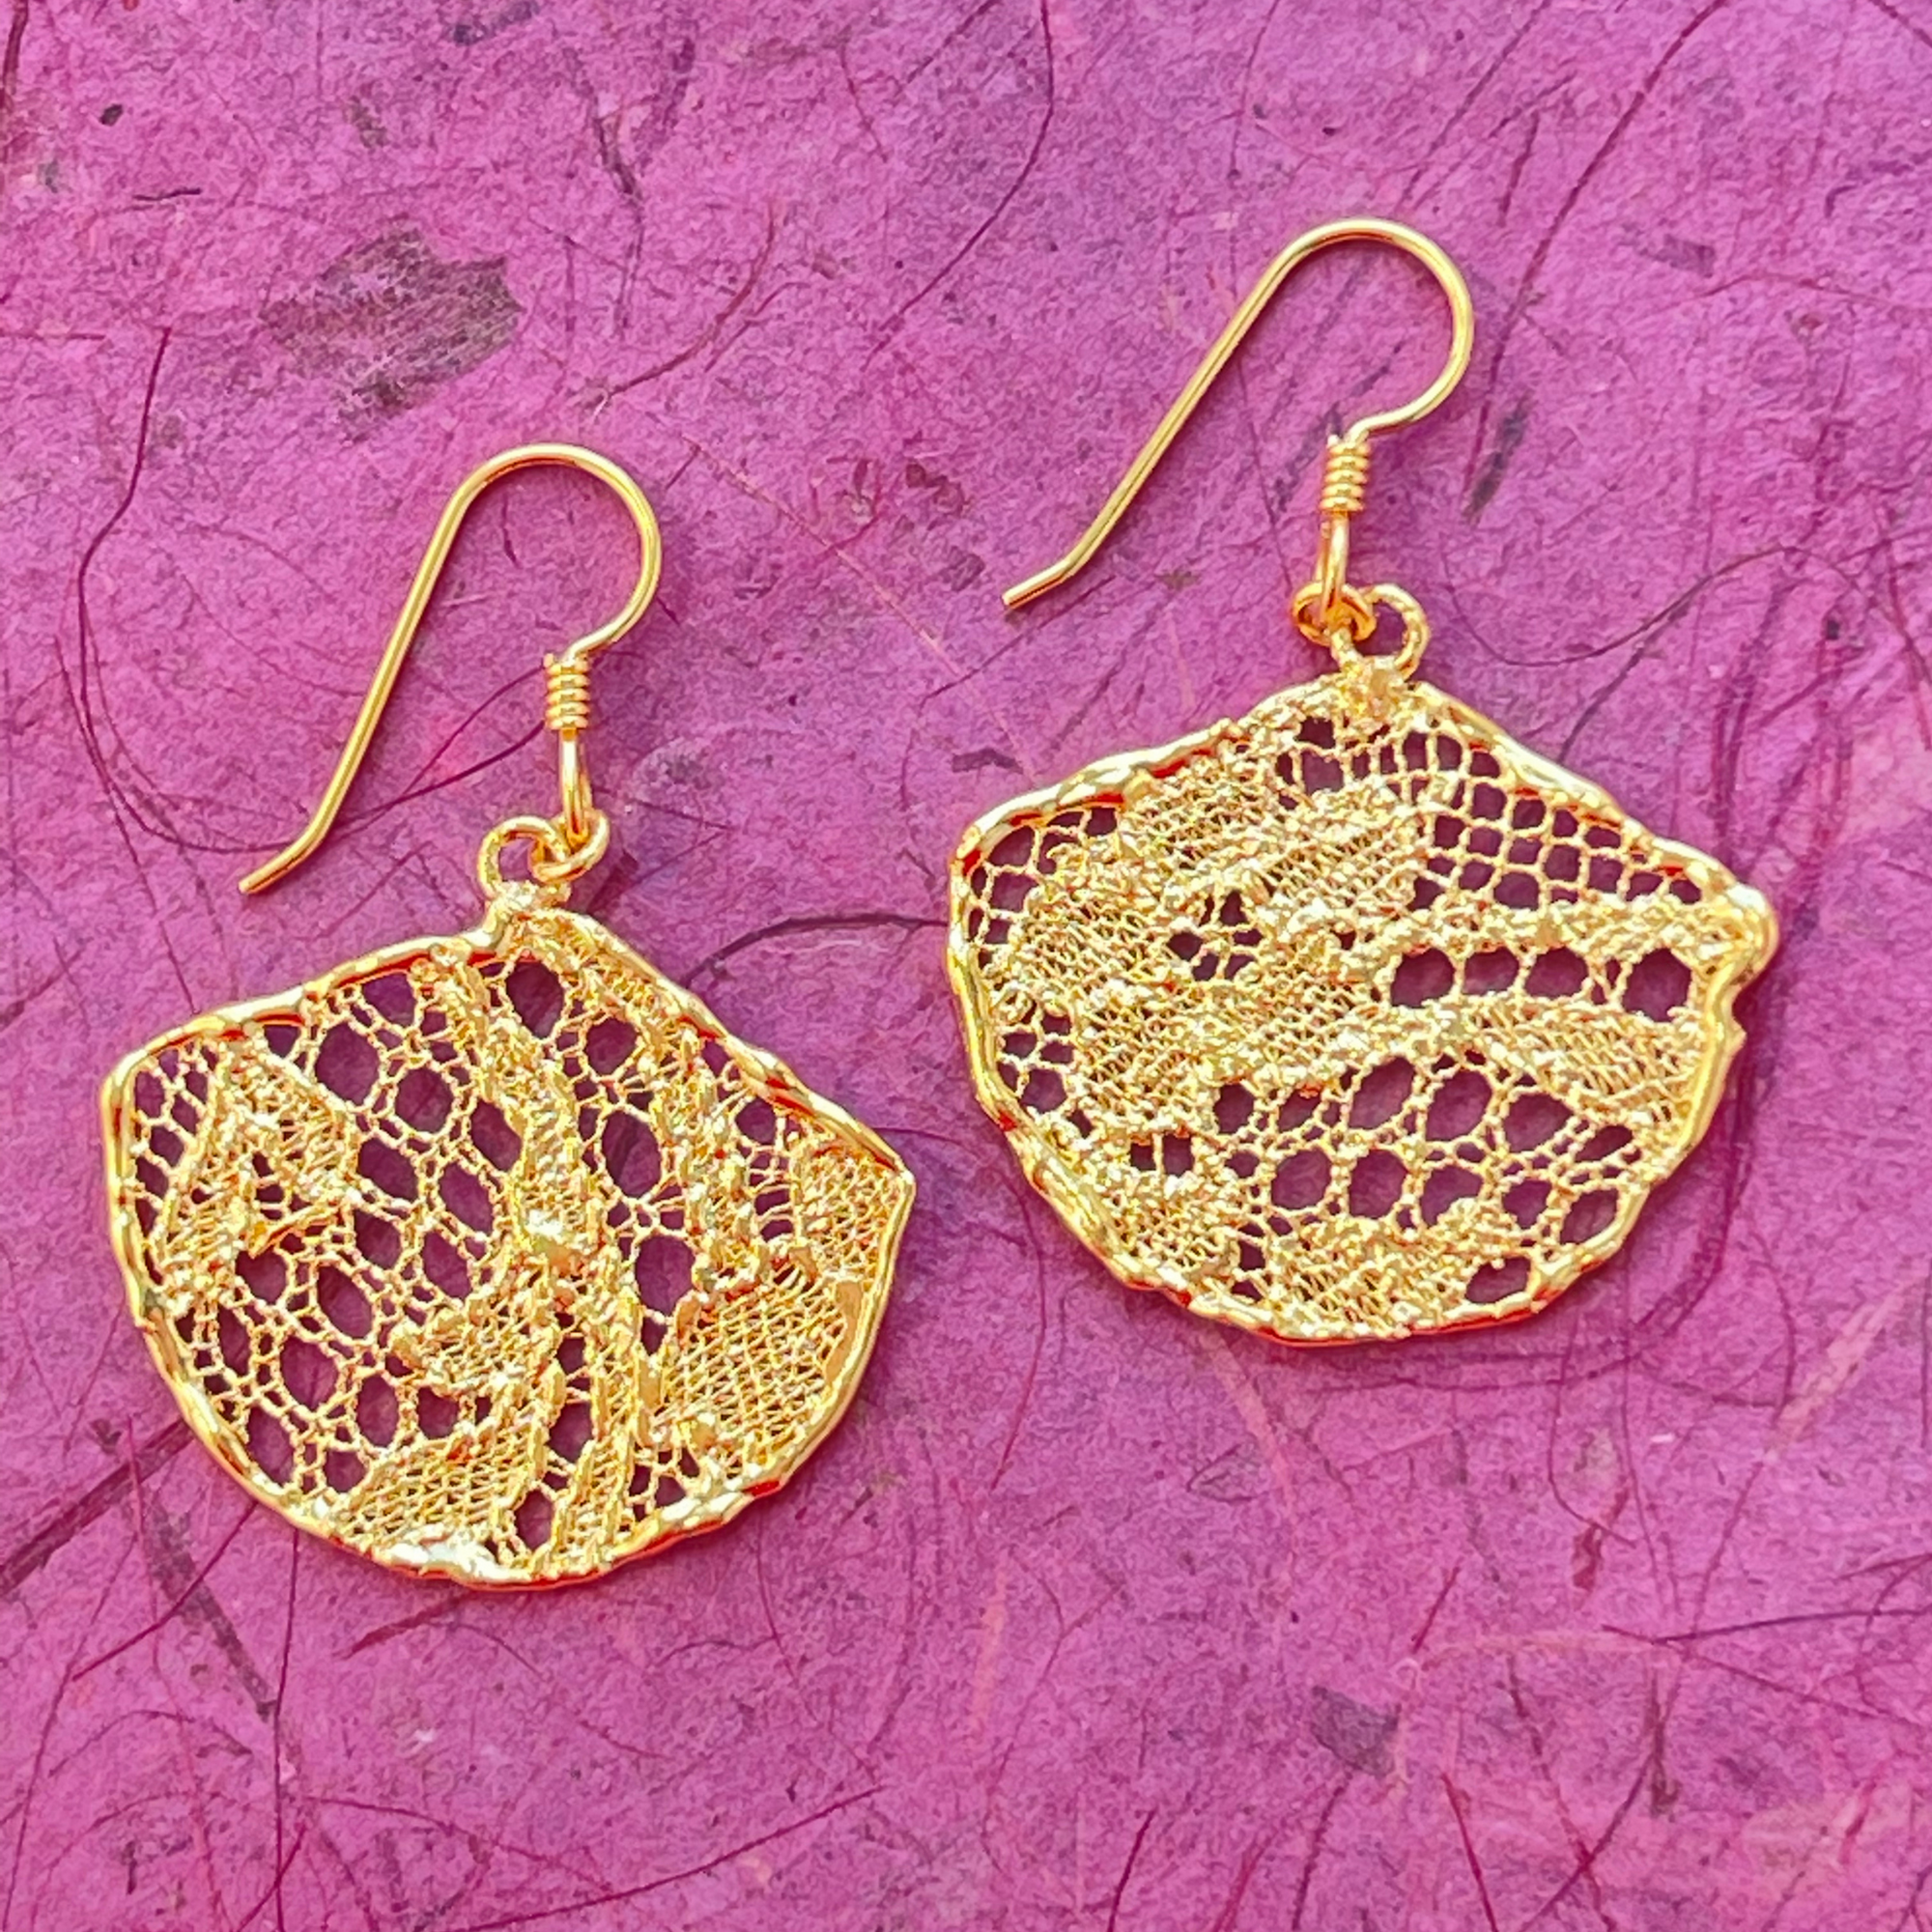 Fan shaped lace earrings in 24k gold.